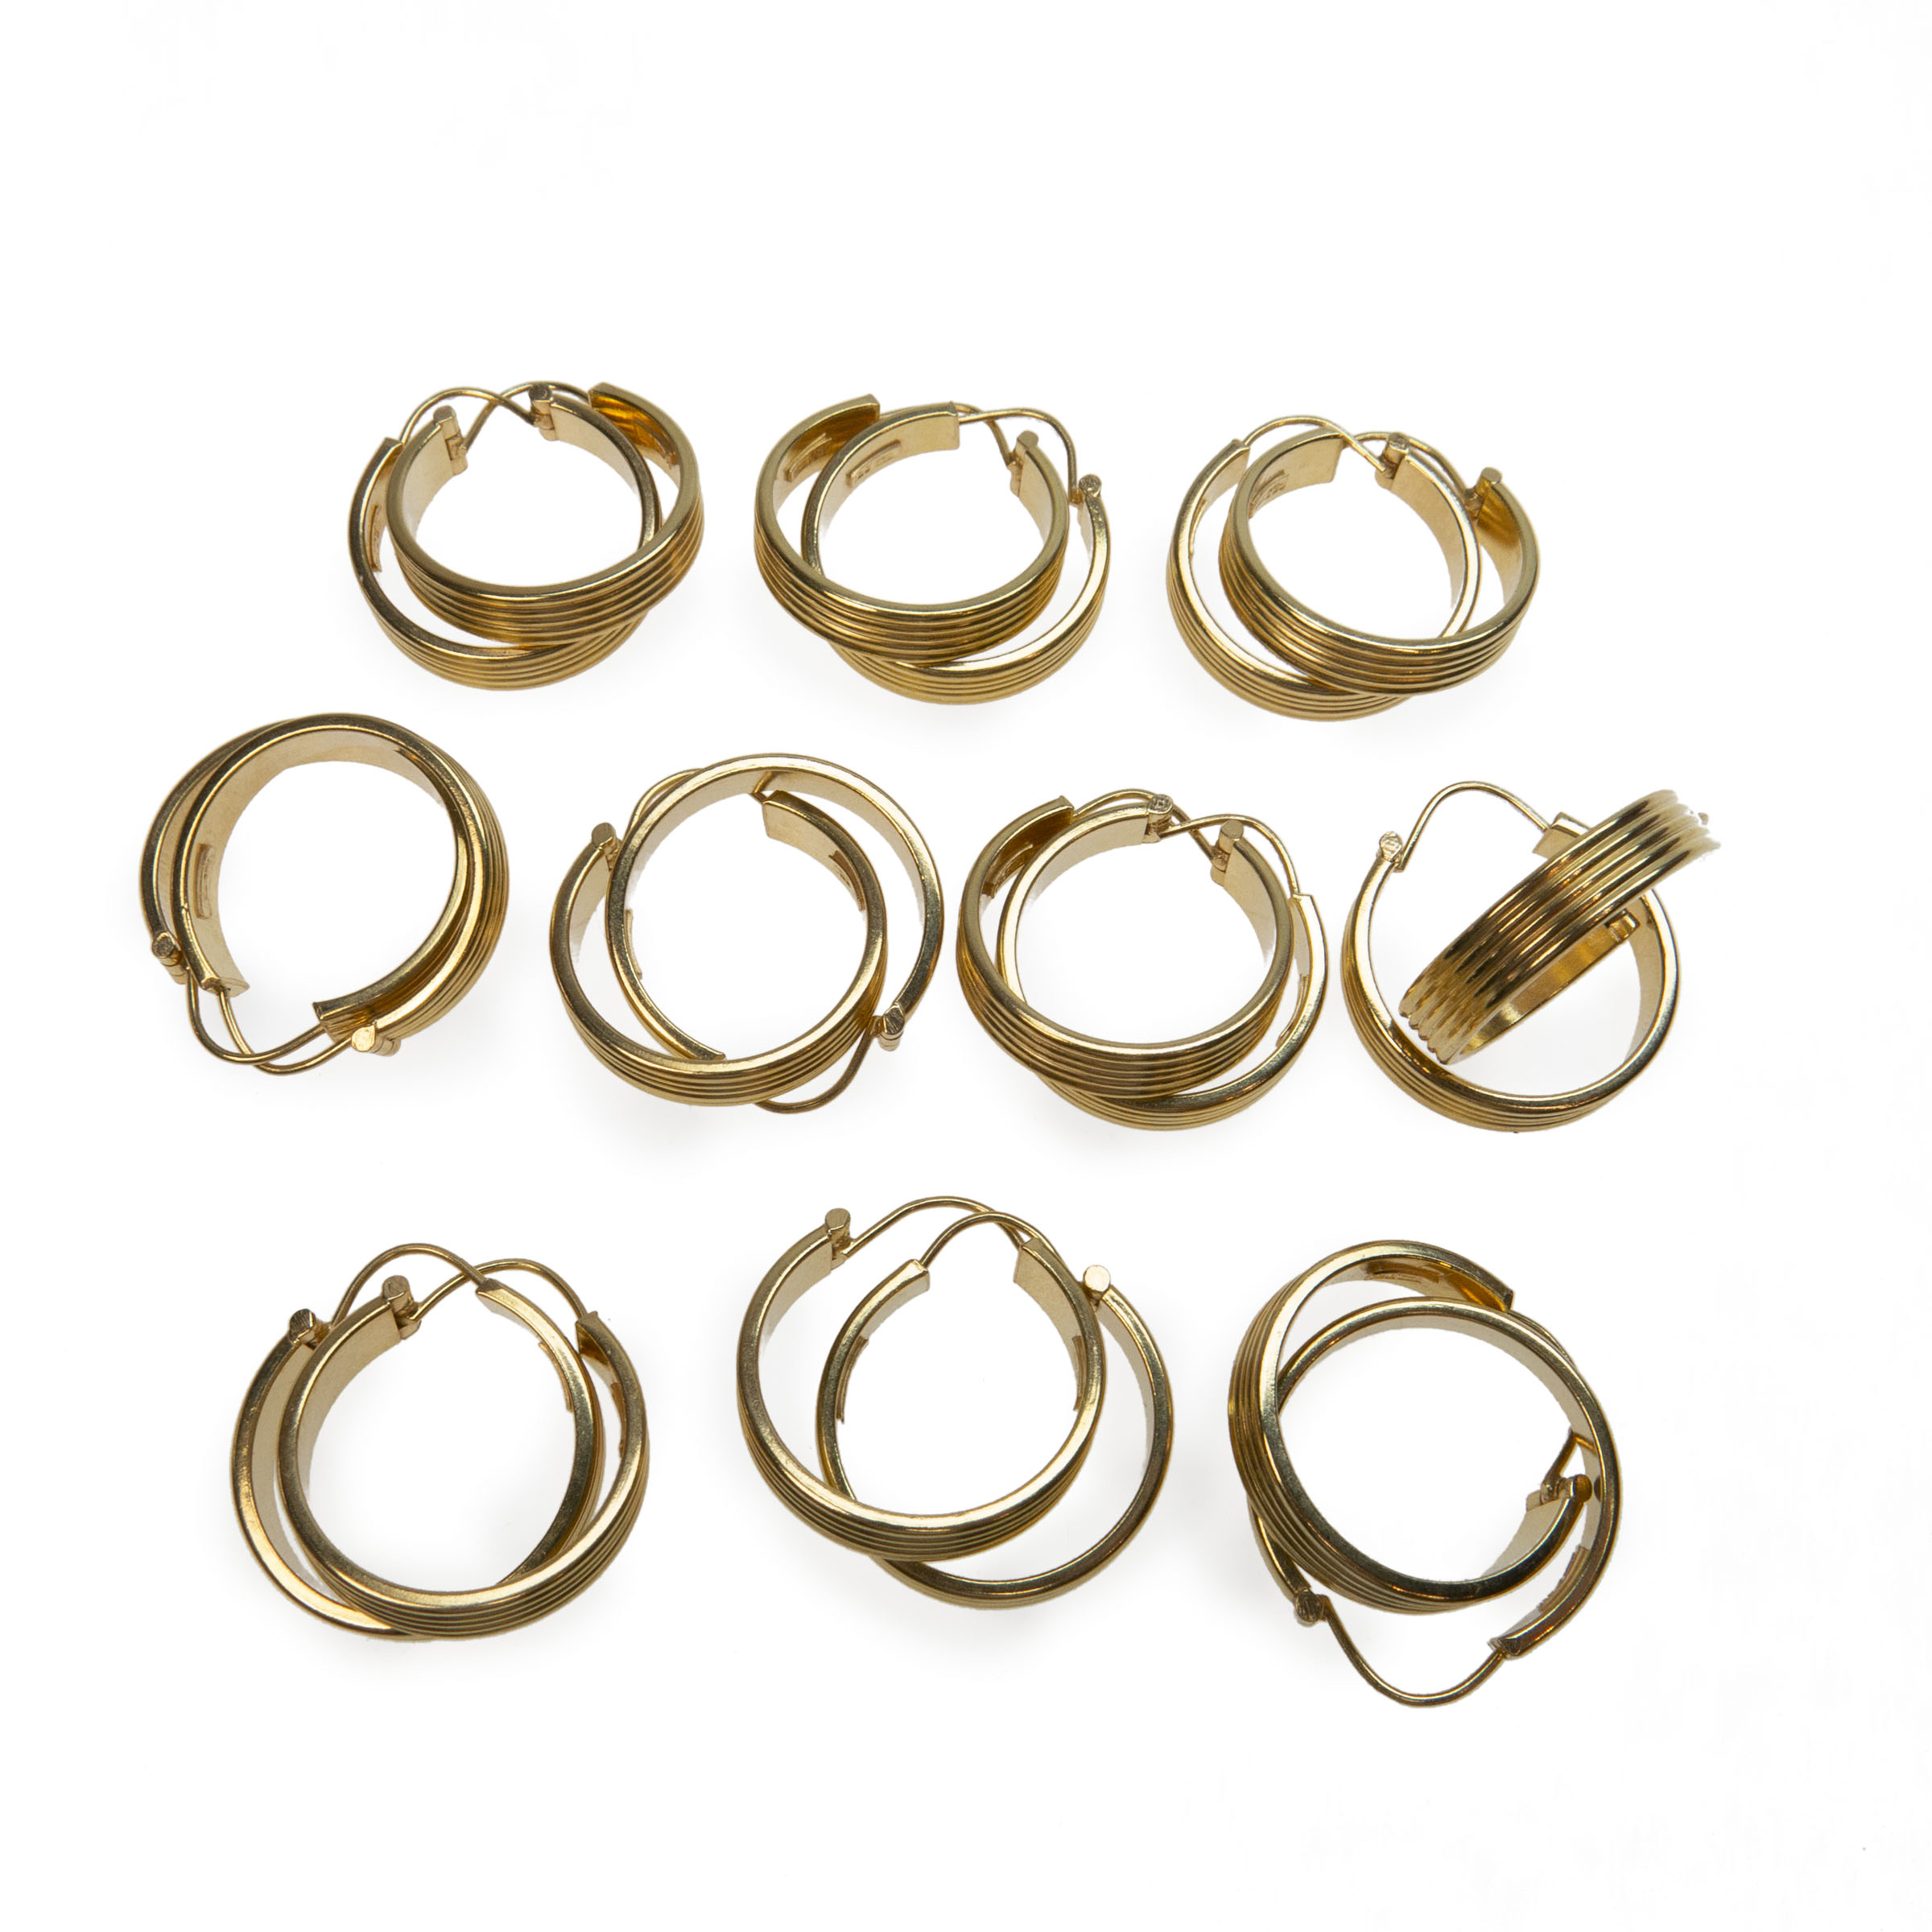 10 x Pairs Of 18K Yellow Gold Hoop Earrings